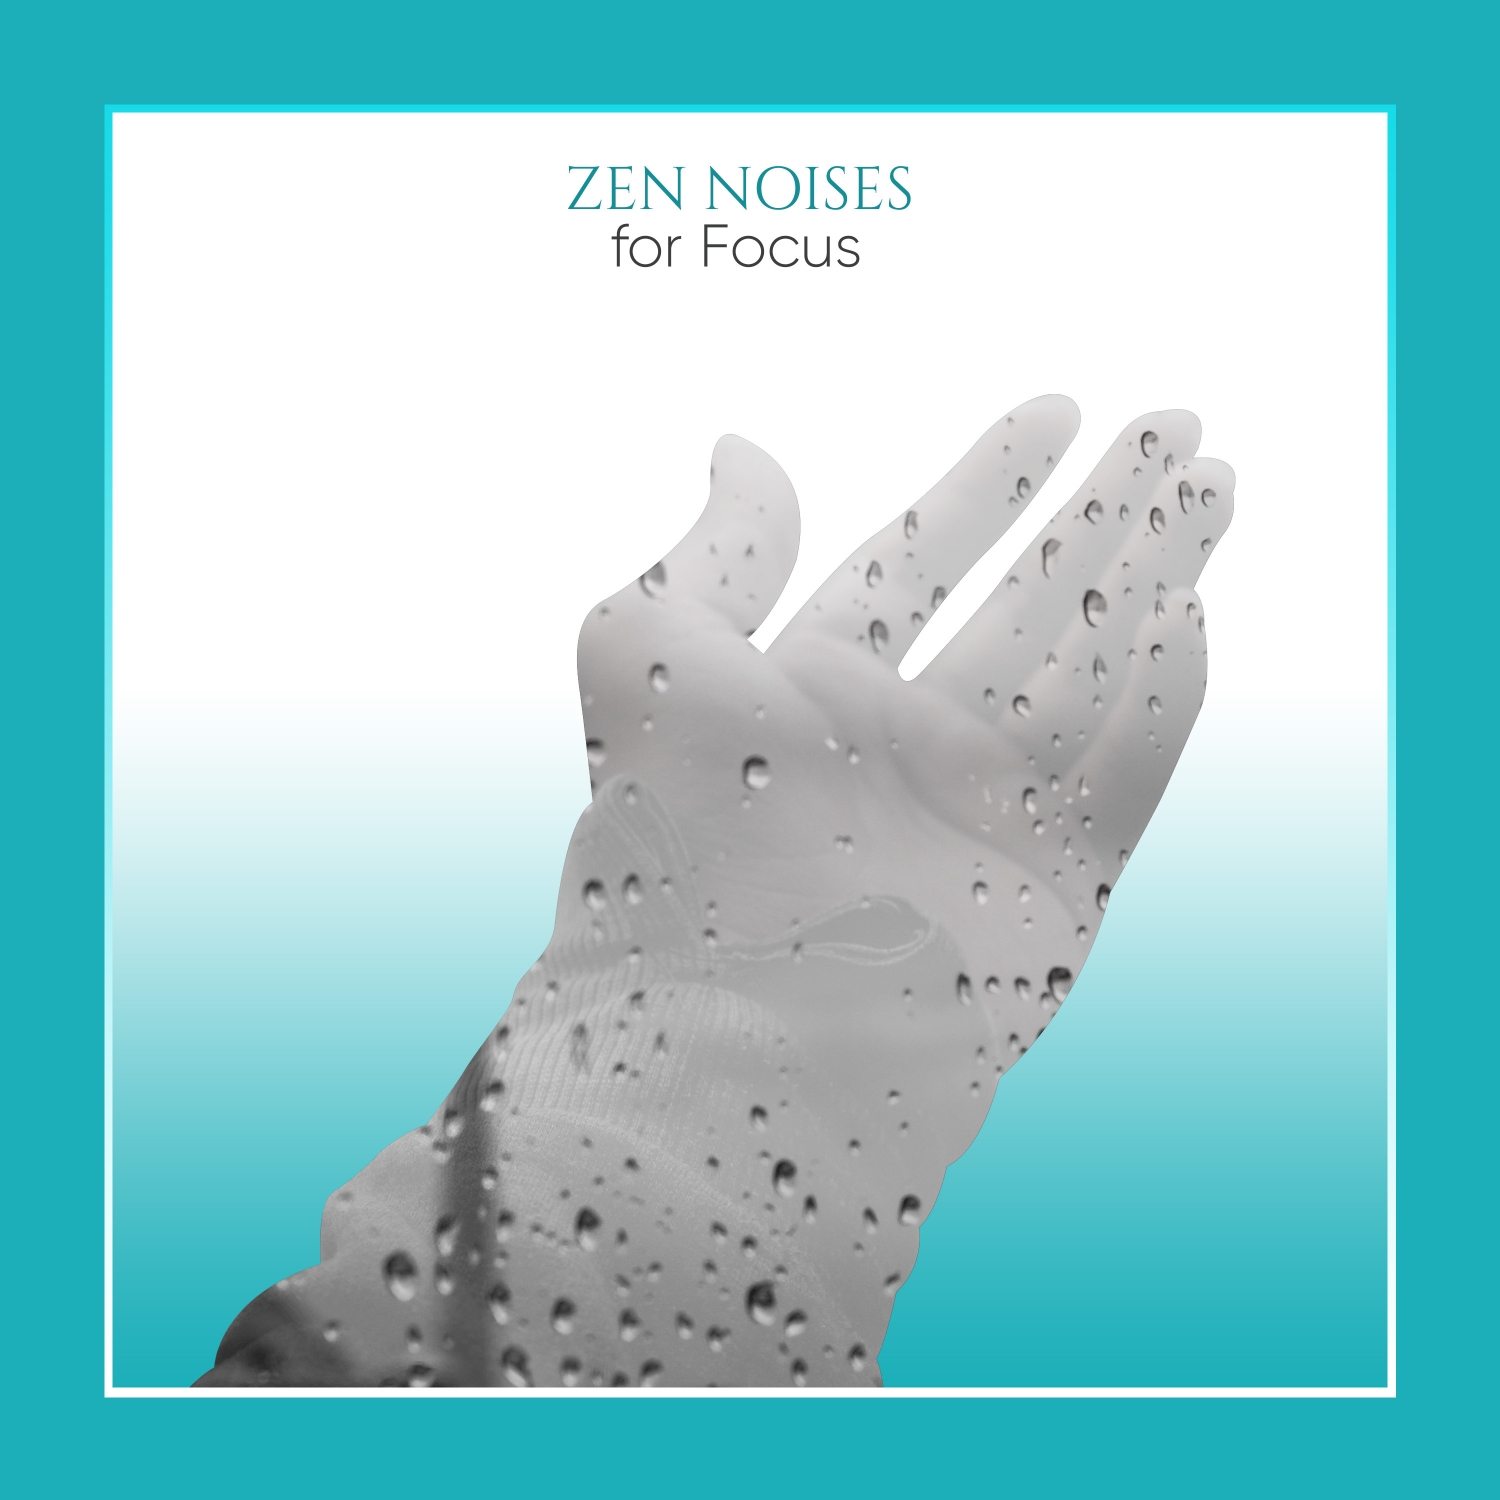 19 Zen Noises to Provide Focus